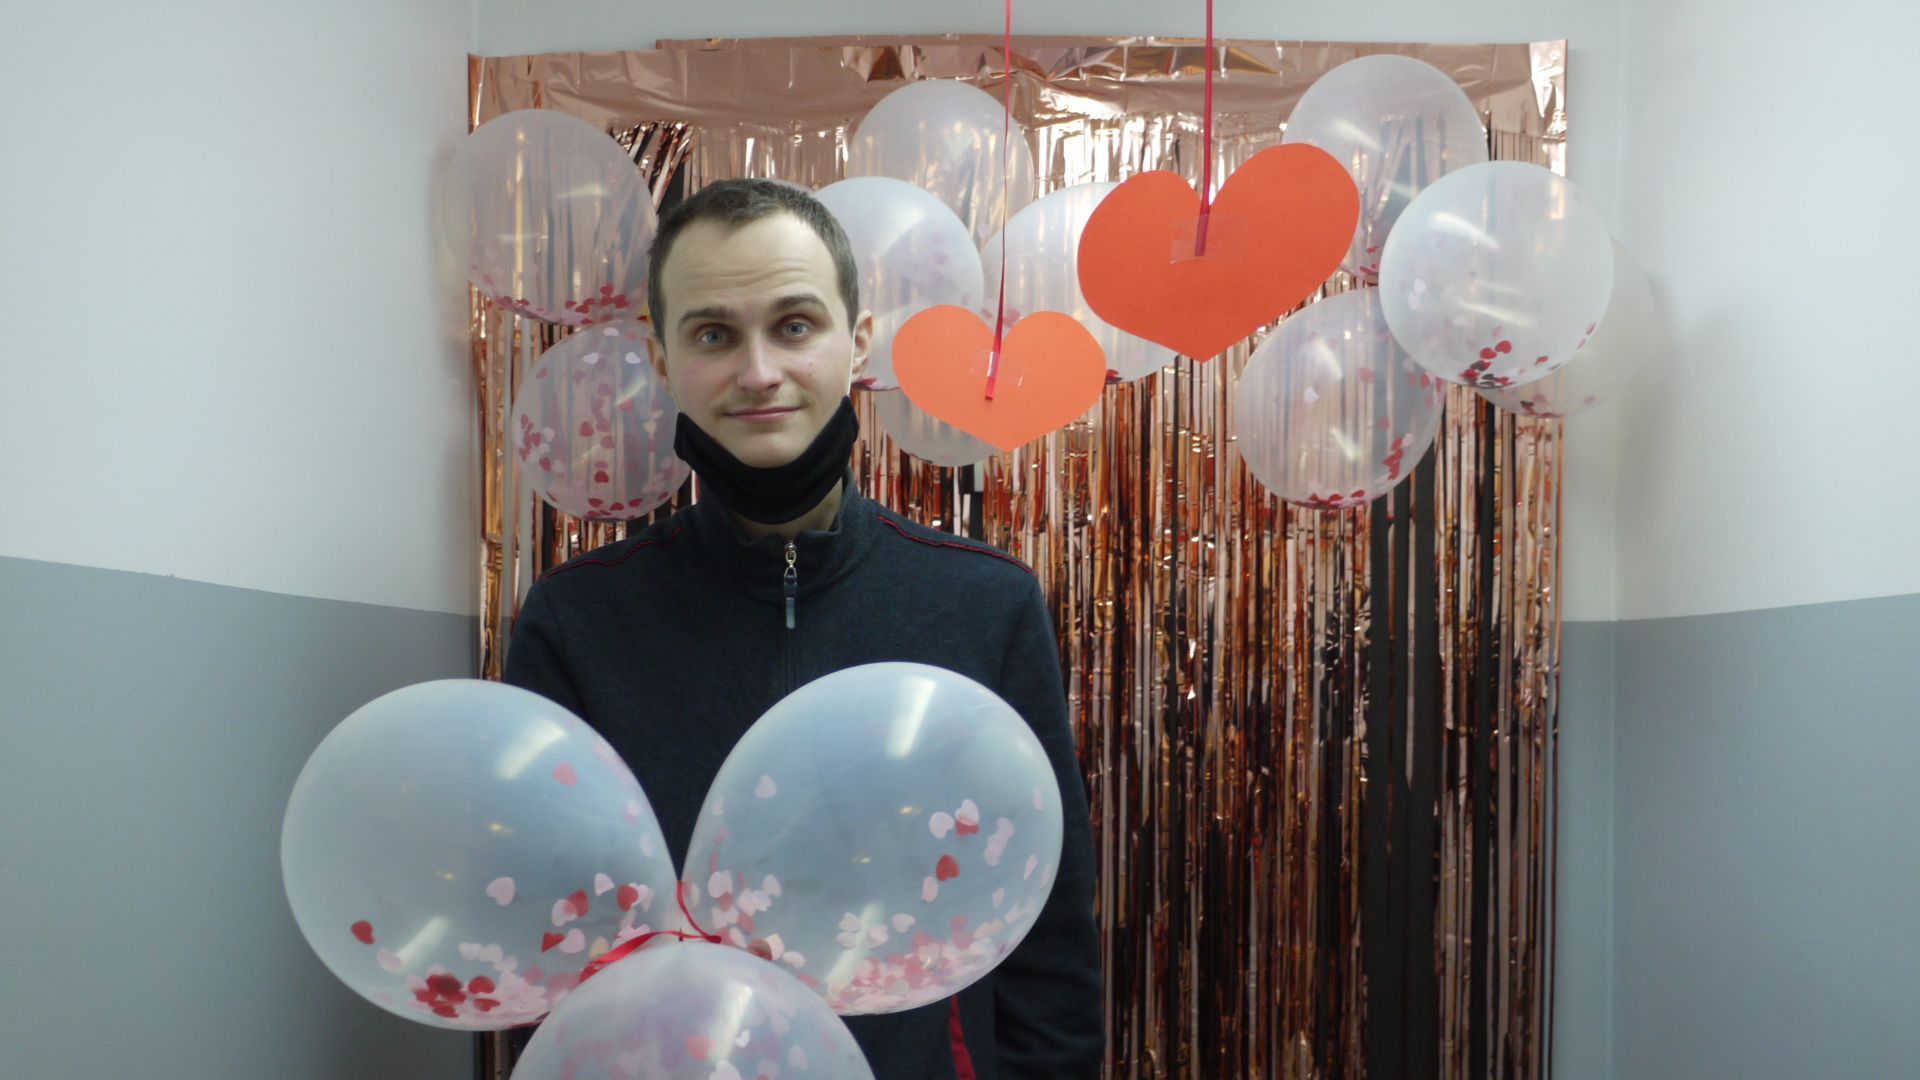 Krzysztof C. trzyma w ręku balony i pozuje na ściance udekorowanej balonami, serpentynami i serduszkami.